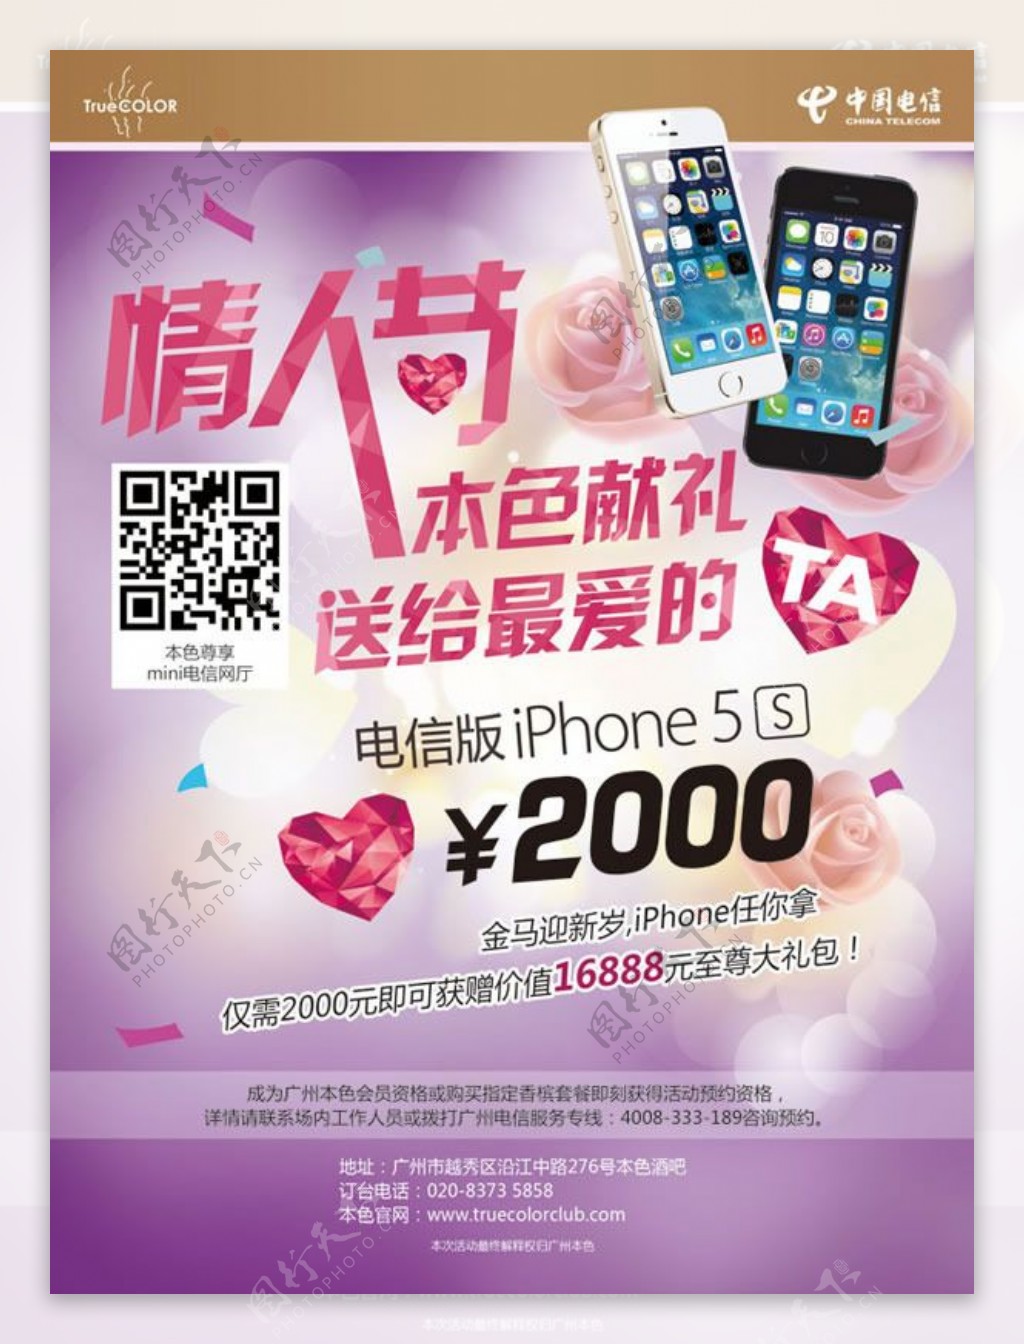 情人节苹果5S手机广告psd素材